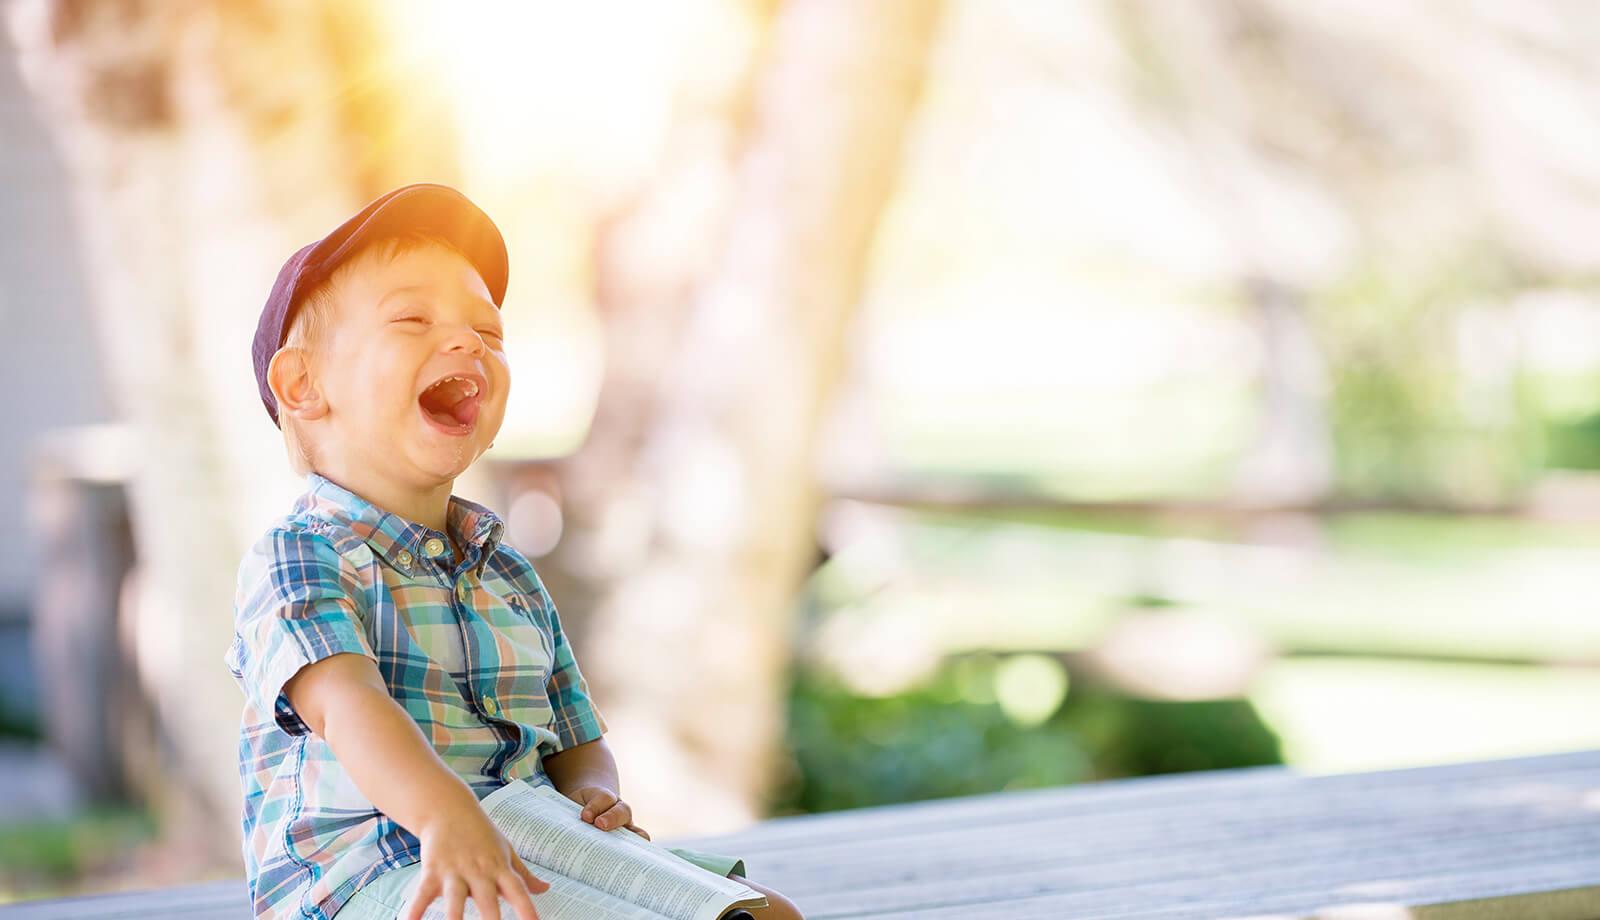 Lachendes Kind auf einer Bank (c) CC0 1.0 - Public Domain (von unsplash.com)